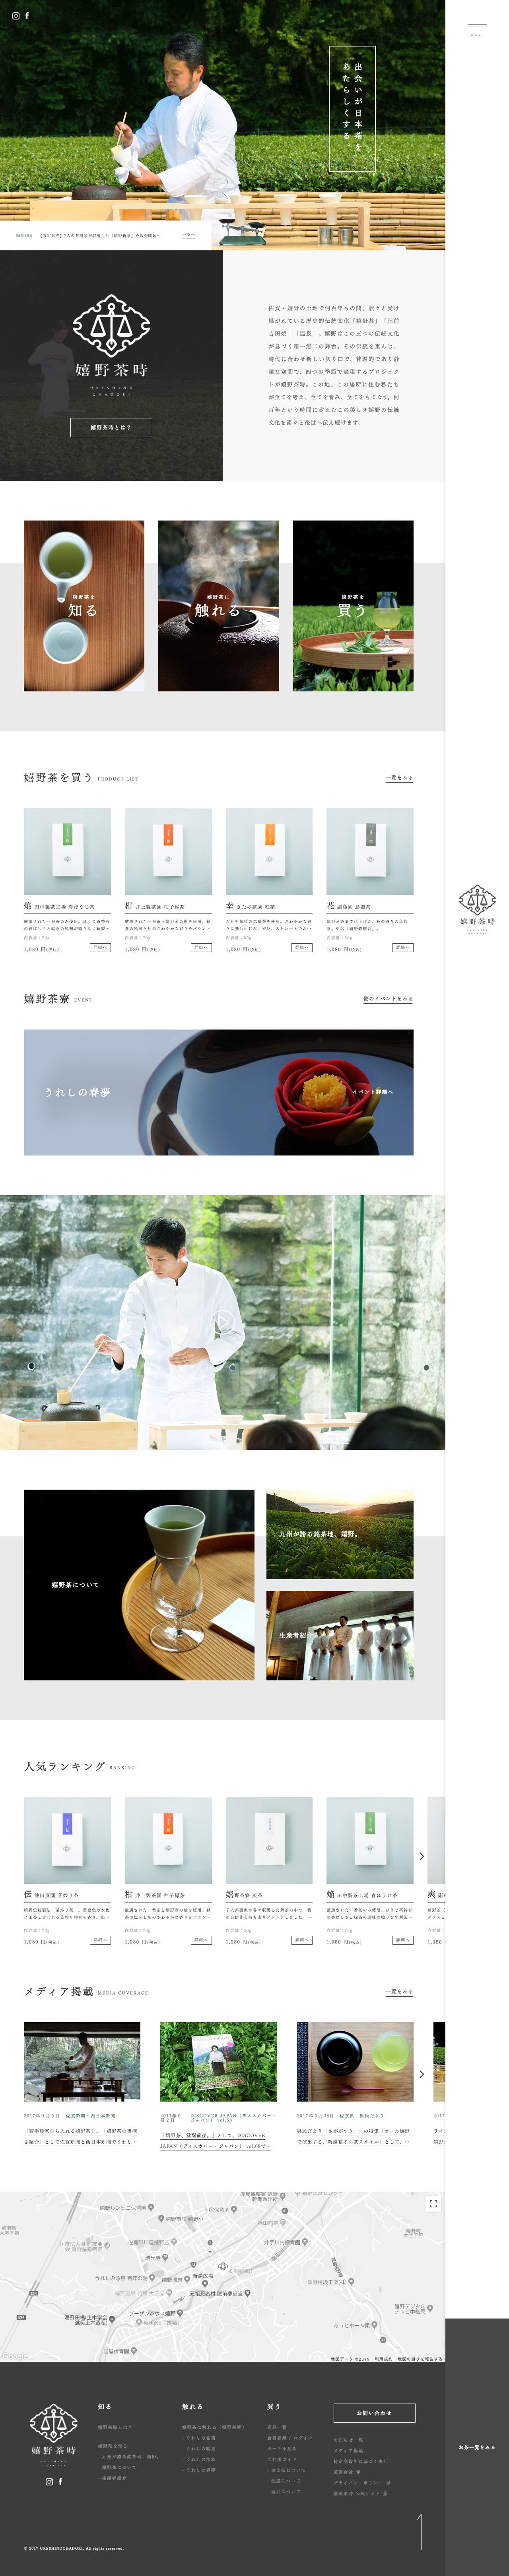 【嬉野茶時】公式オンラインショップ - オリジナル嬉野茶販売サイトのスクリーンショット - トップページ